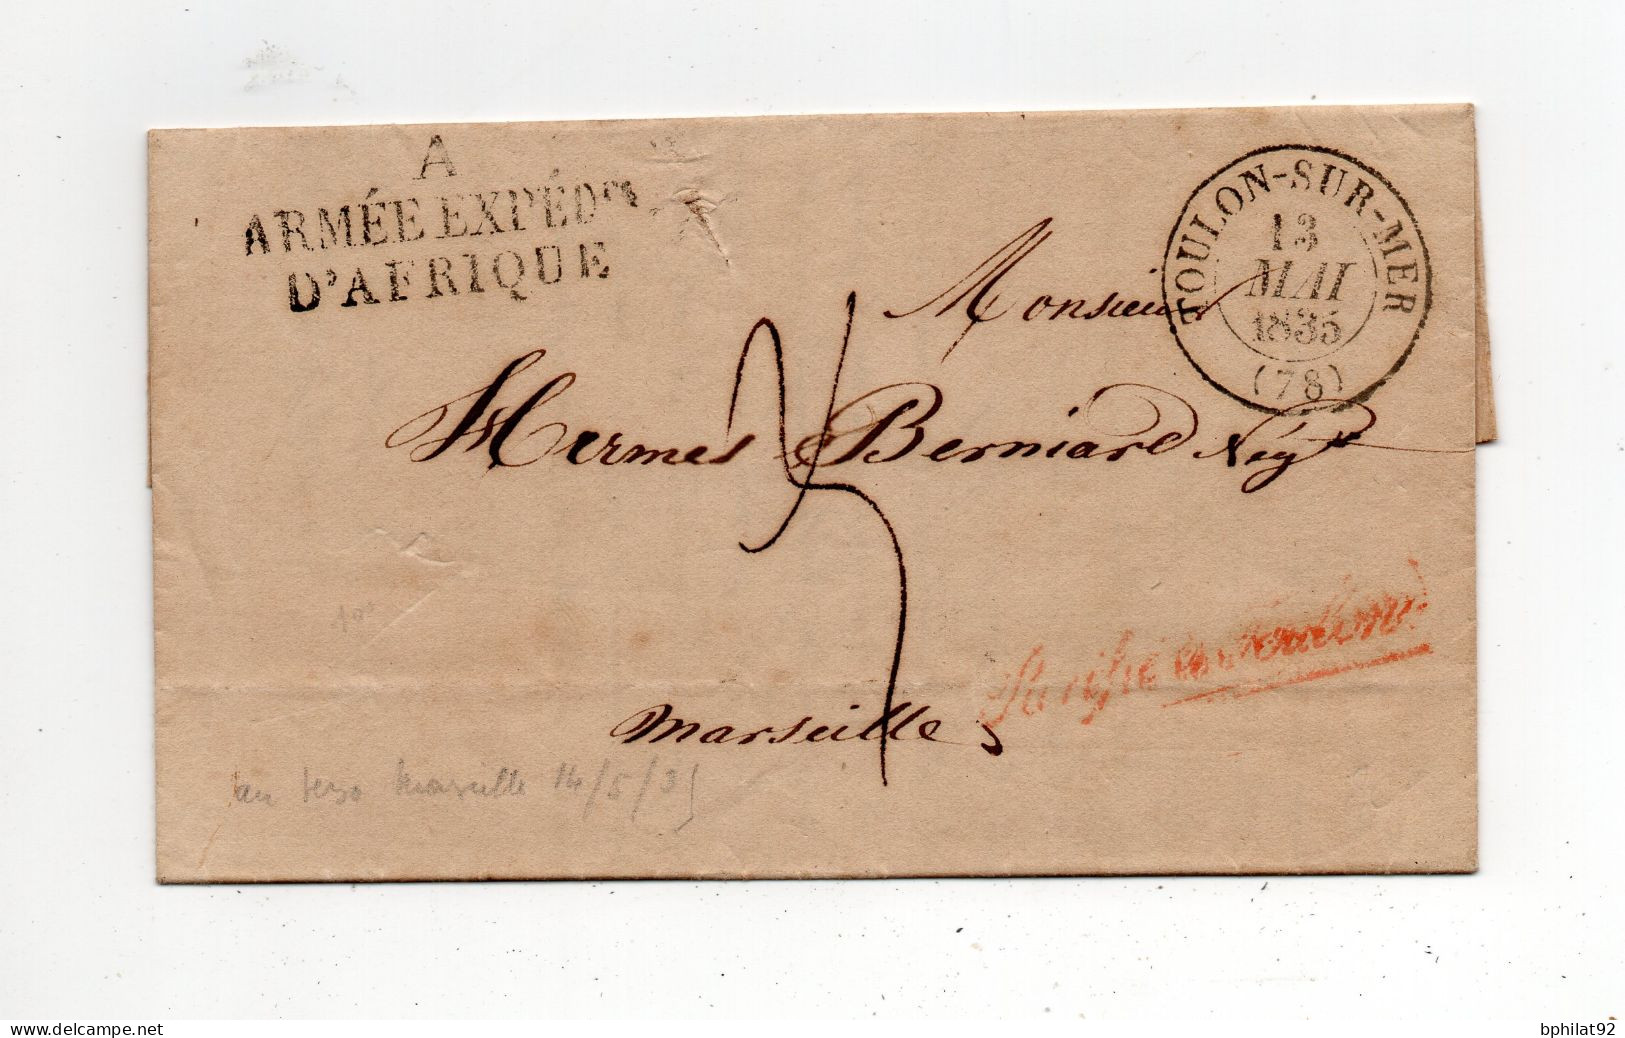 !!! ALGERIE, CACHET ARMEE EXPEDITIONNAIRE D'AFRIQUE A SUR LETTRE D'ALGER DE 1835, AVEC TEXTE - Army Postmarks (before 1900)